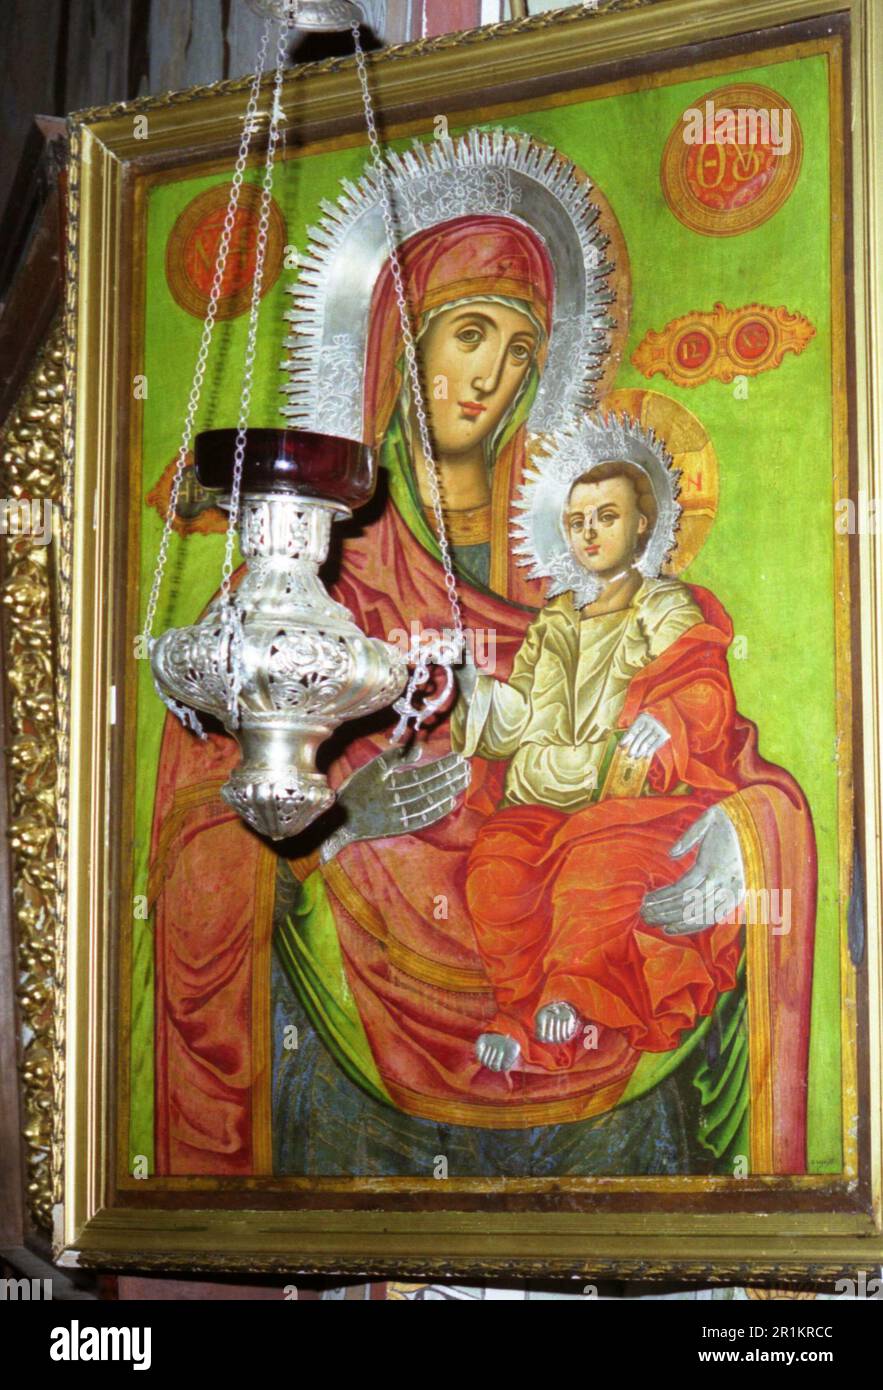 Monastero di Celic Dere, Contea di Tulcea, Romania, 2002. Antica icona greco-ortodossa, considerata un'icona miracolosa. Foto Stock